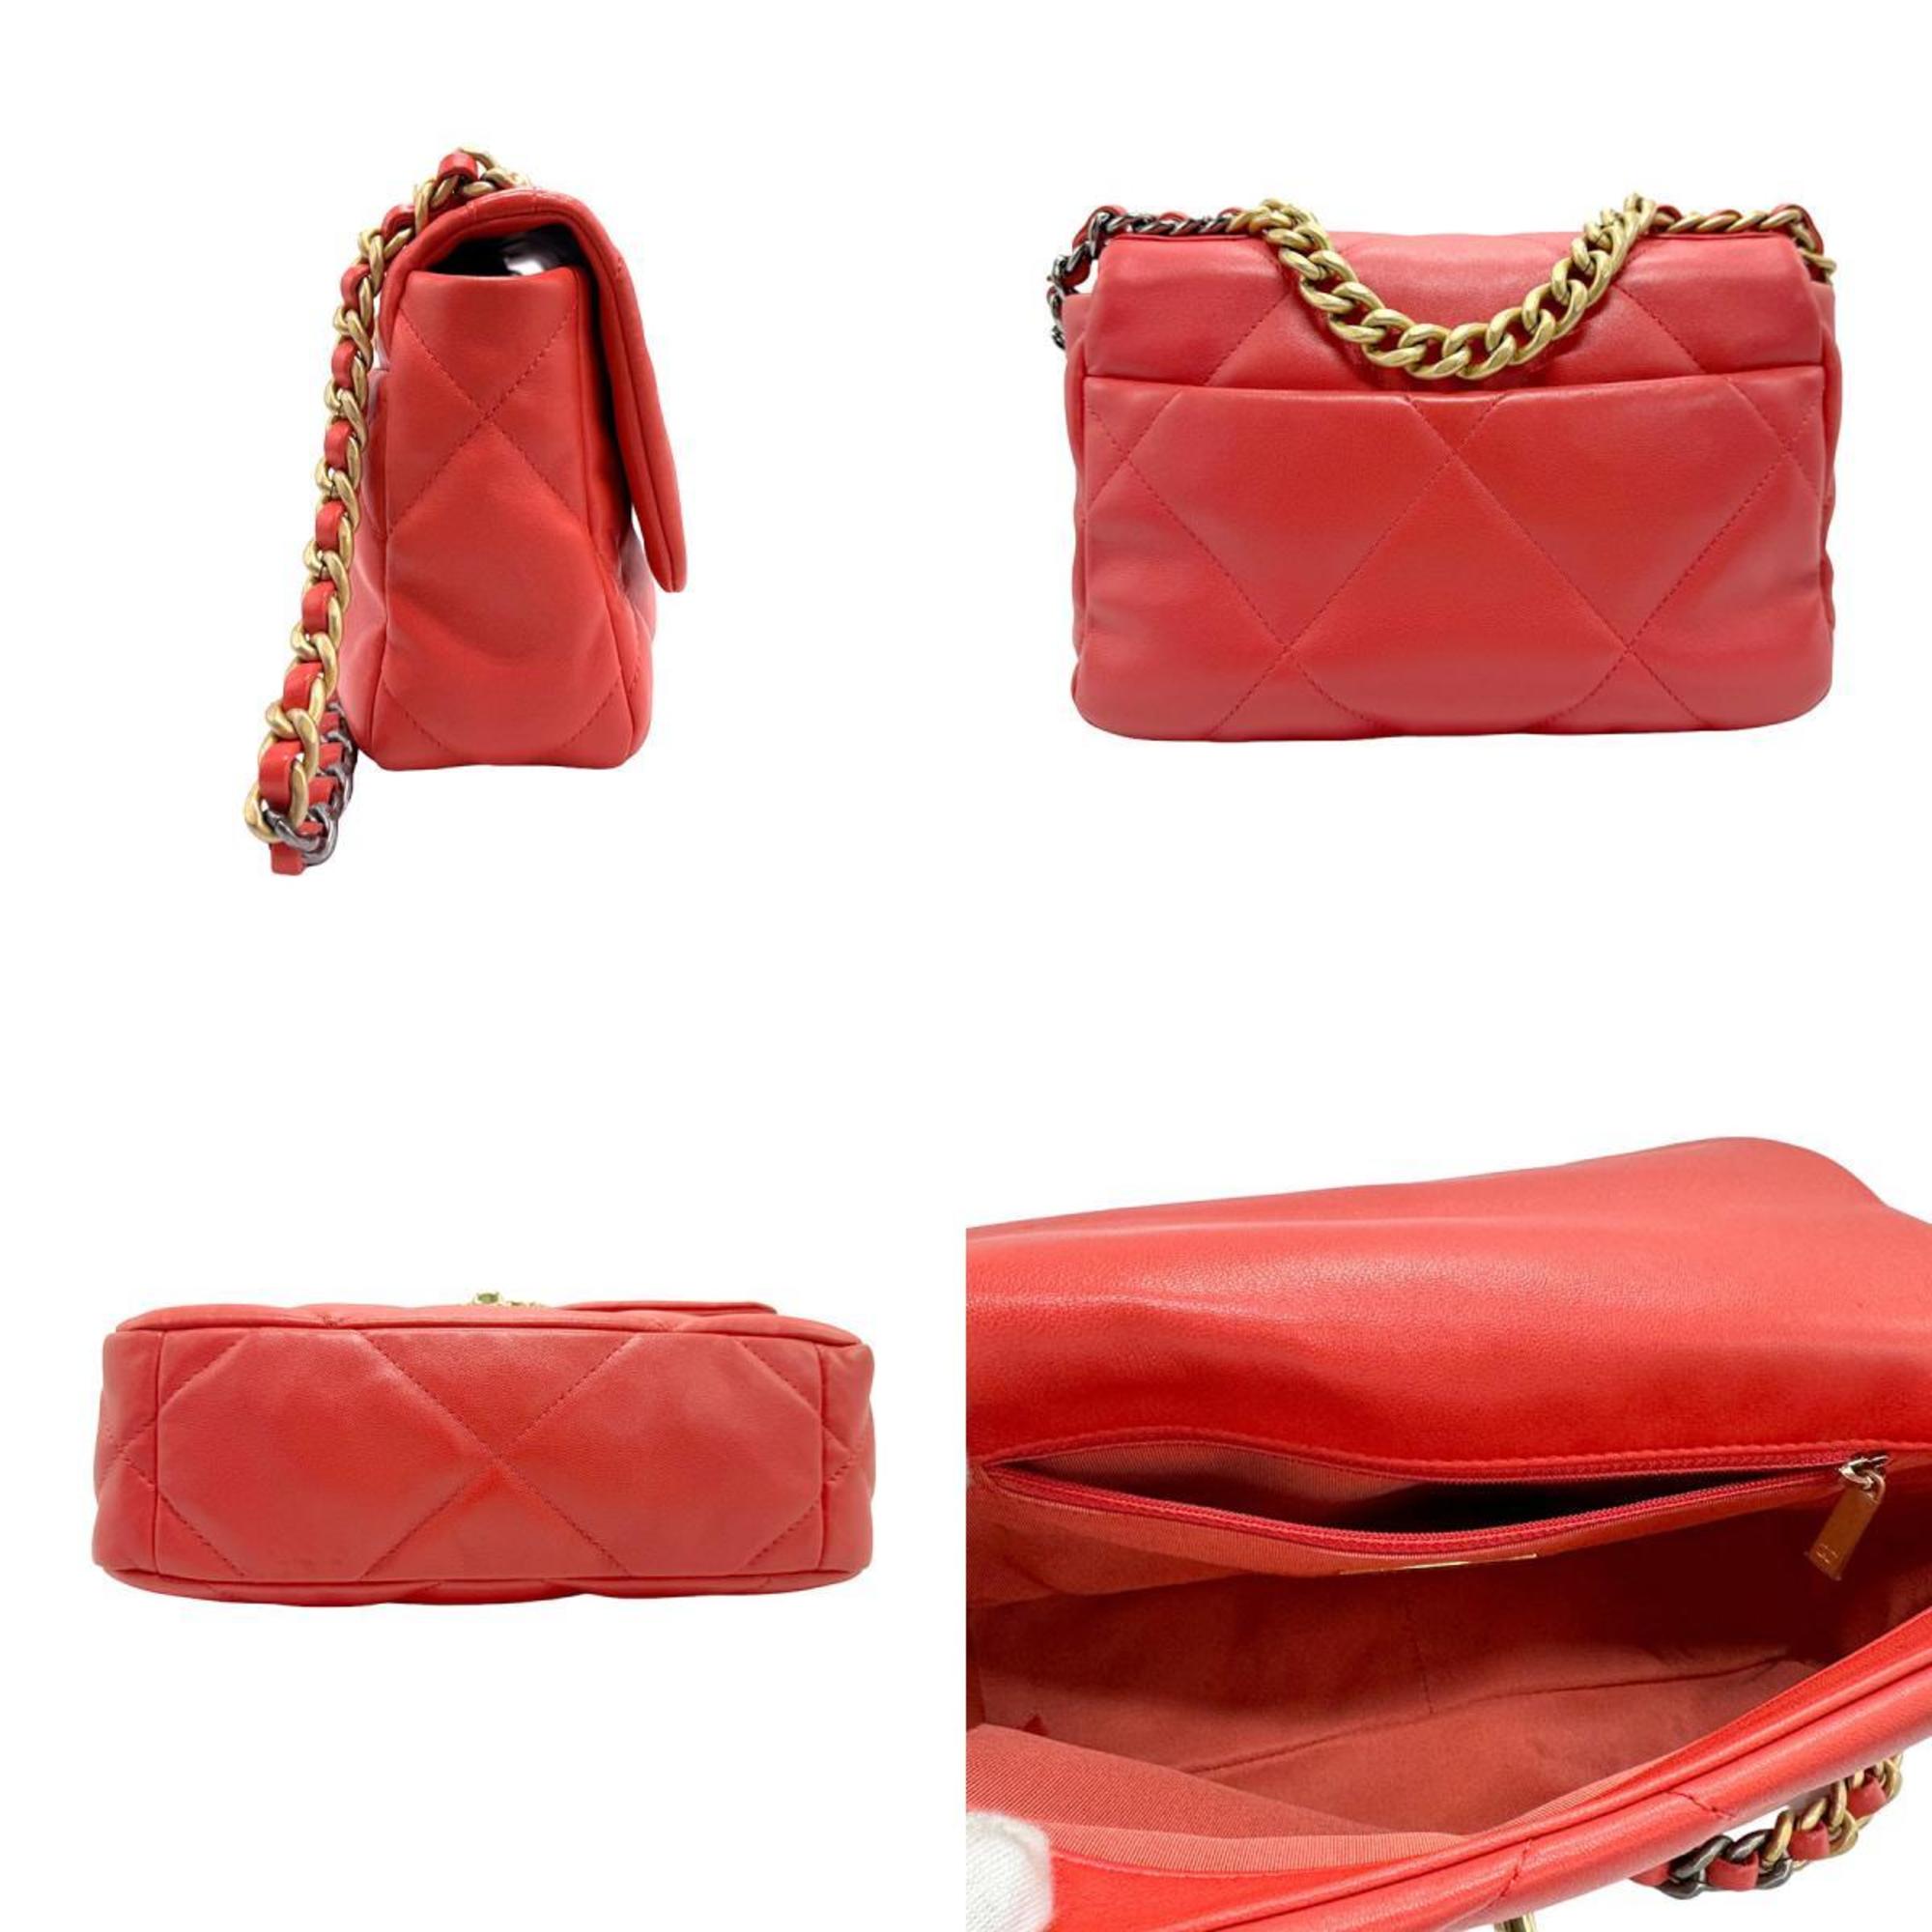 CHANEL Handbag Shoulder Bag 19 Leather Orange Pink Women's z1552